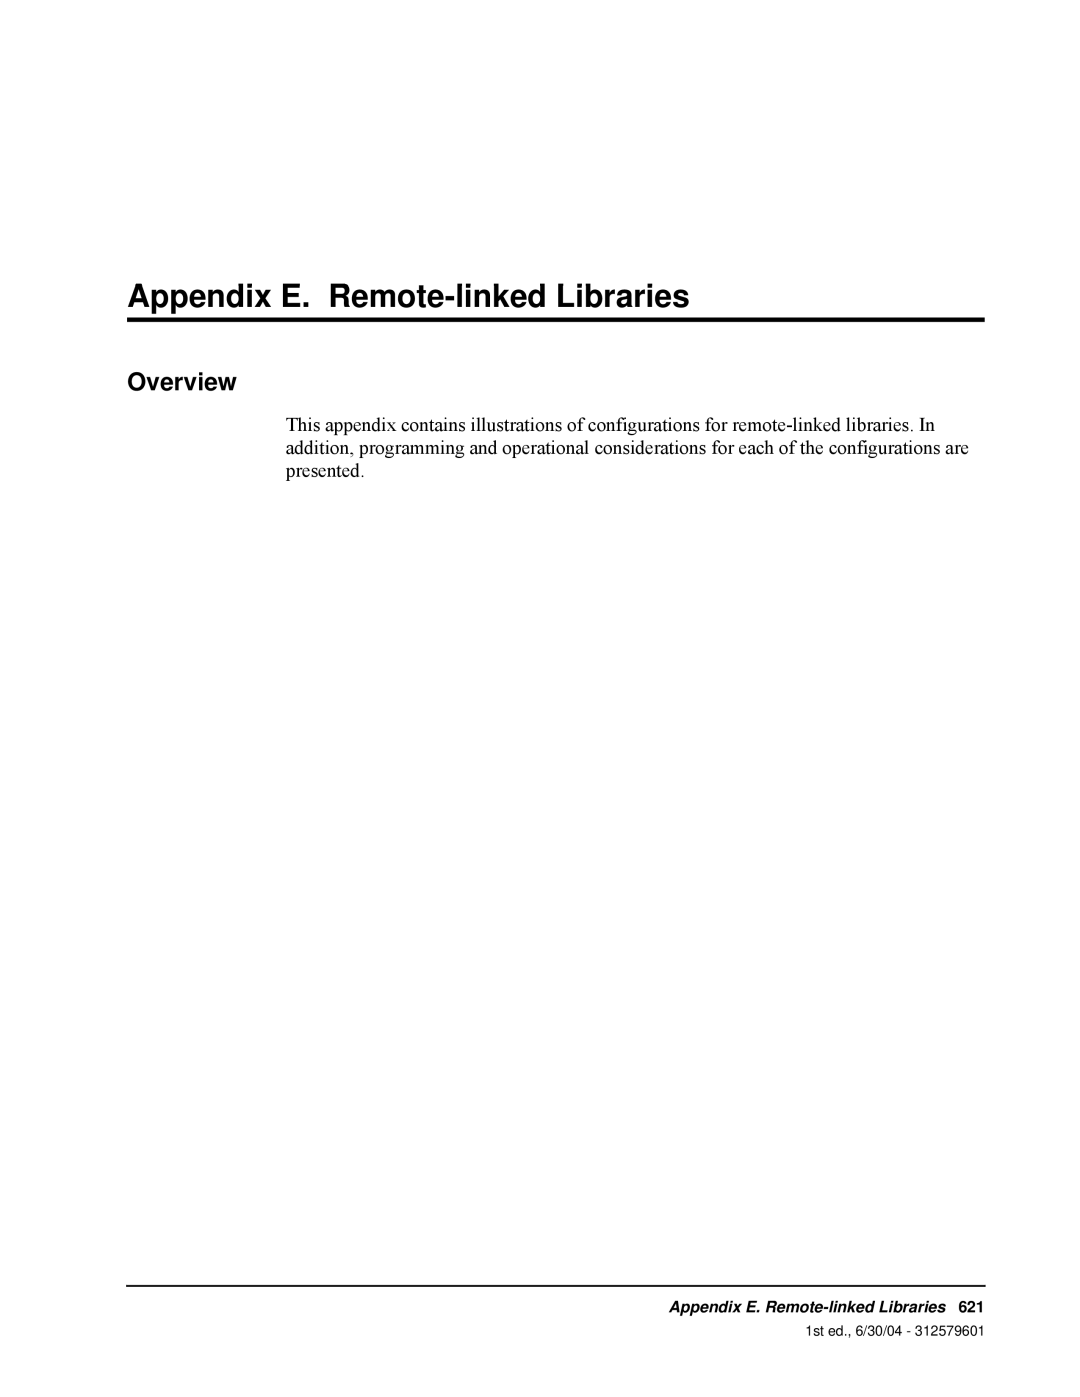 StorageTek manual Appendix E. Remote-linkedLibraries, Overview, 1st ed., 6/30/04 